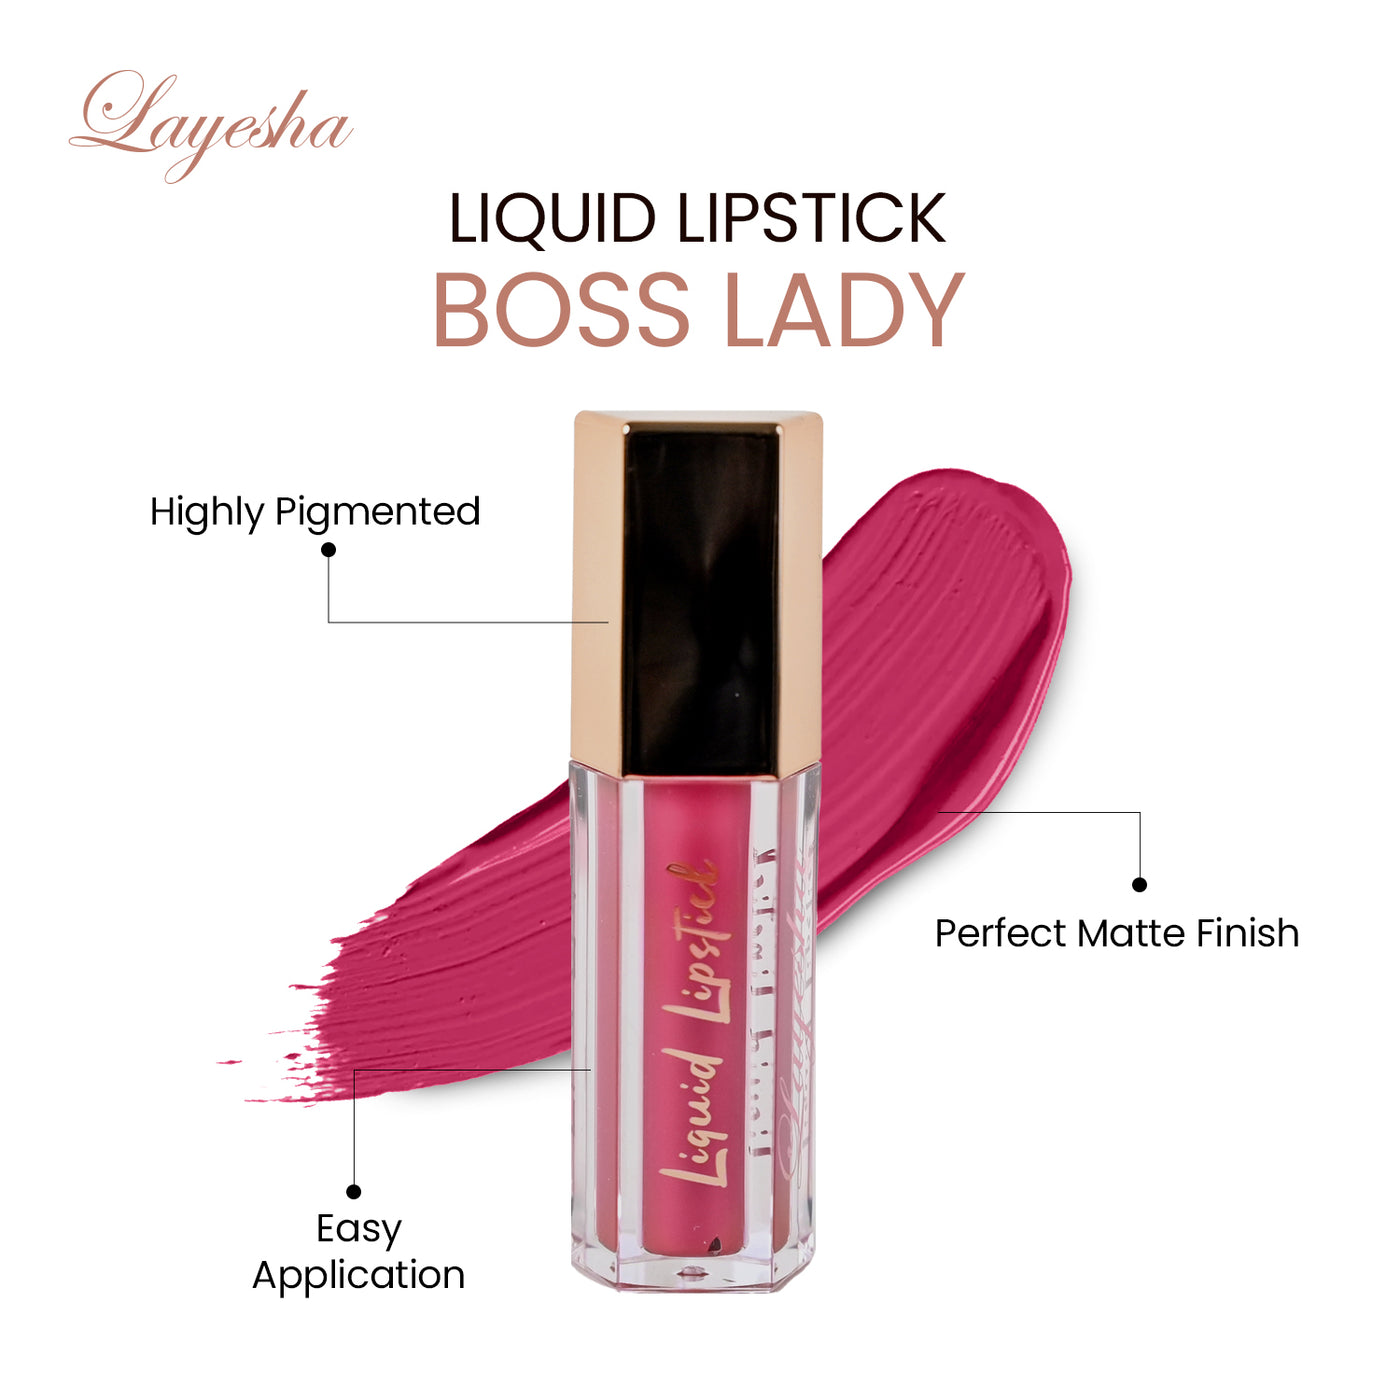 Layesha Boss Lady Liquid Lipstick